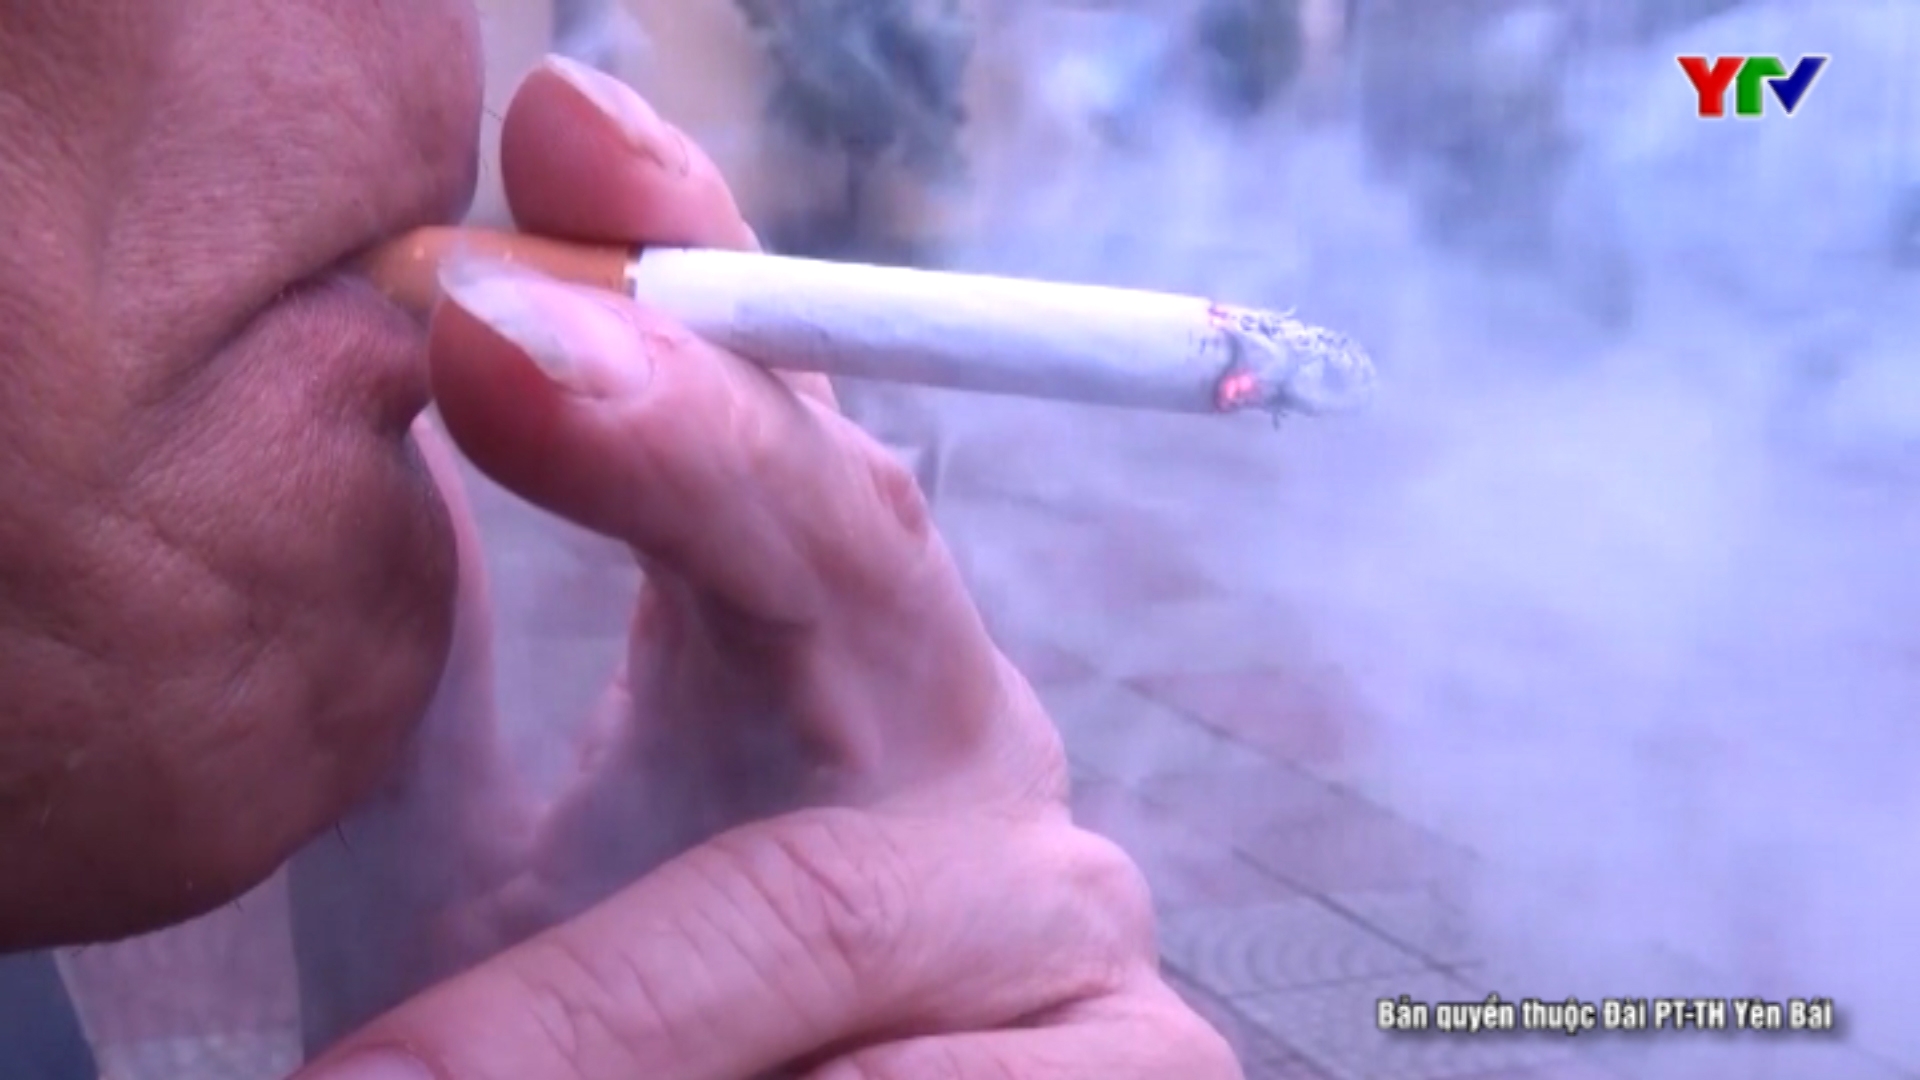 Đẩy mạnh tuyên truyền về tác hại của thuốc lá